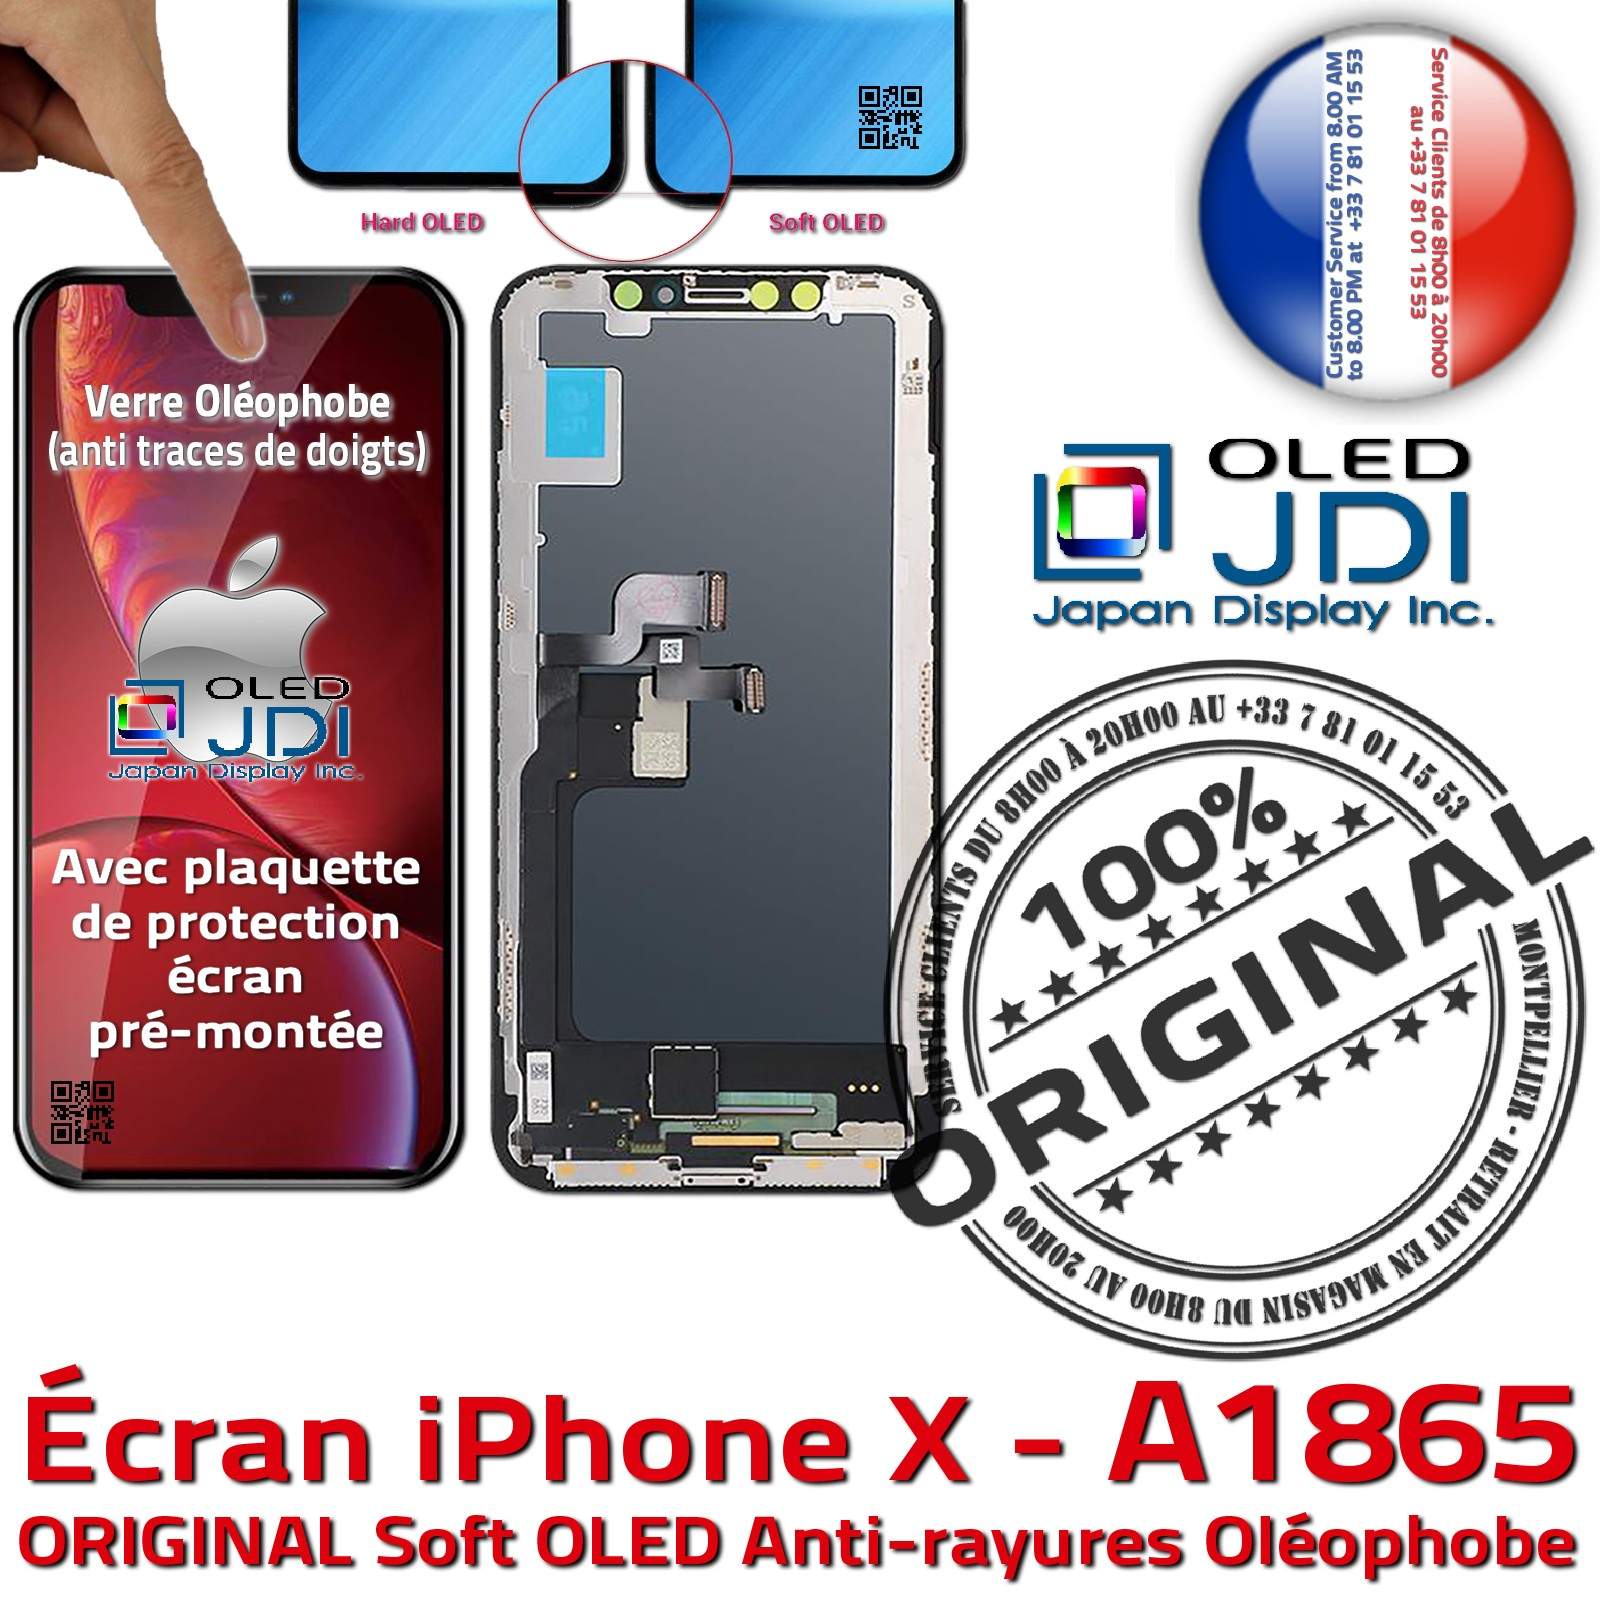 Écran Tactile iPhone X A1865 soft OLED Apple ORIGINAL Super Retina